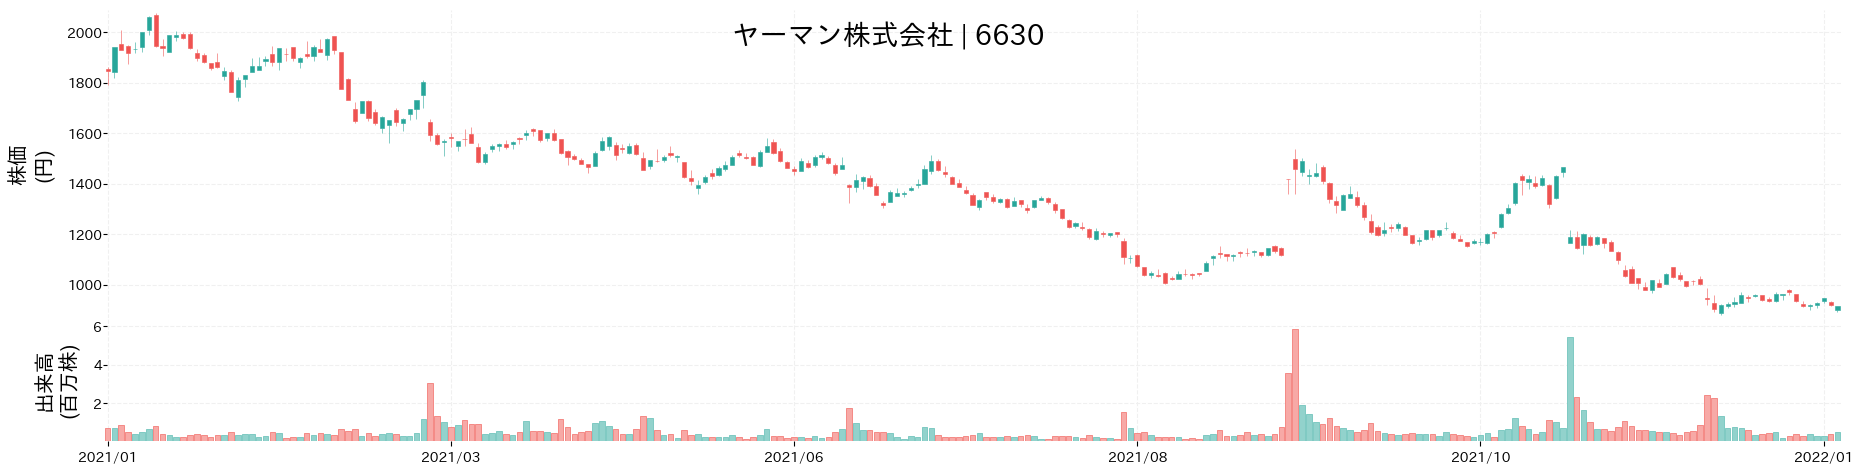 ヤーマンの株価推移(2021)